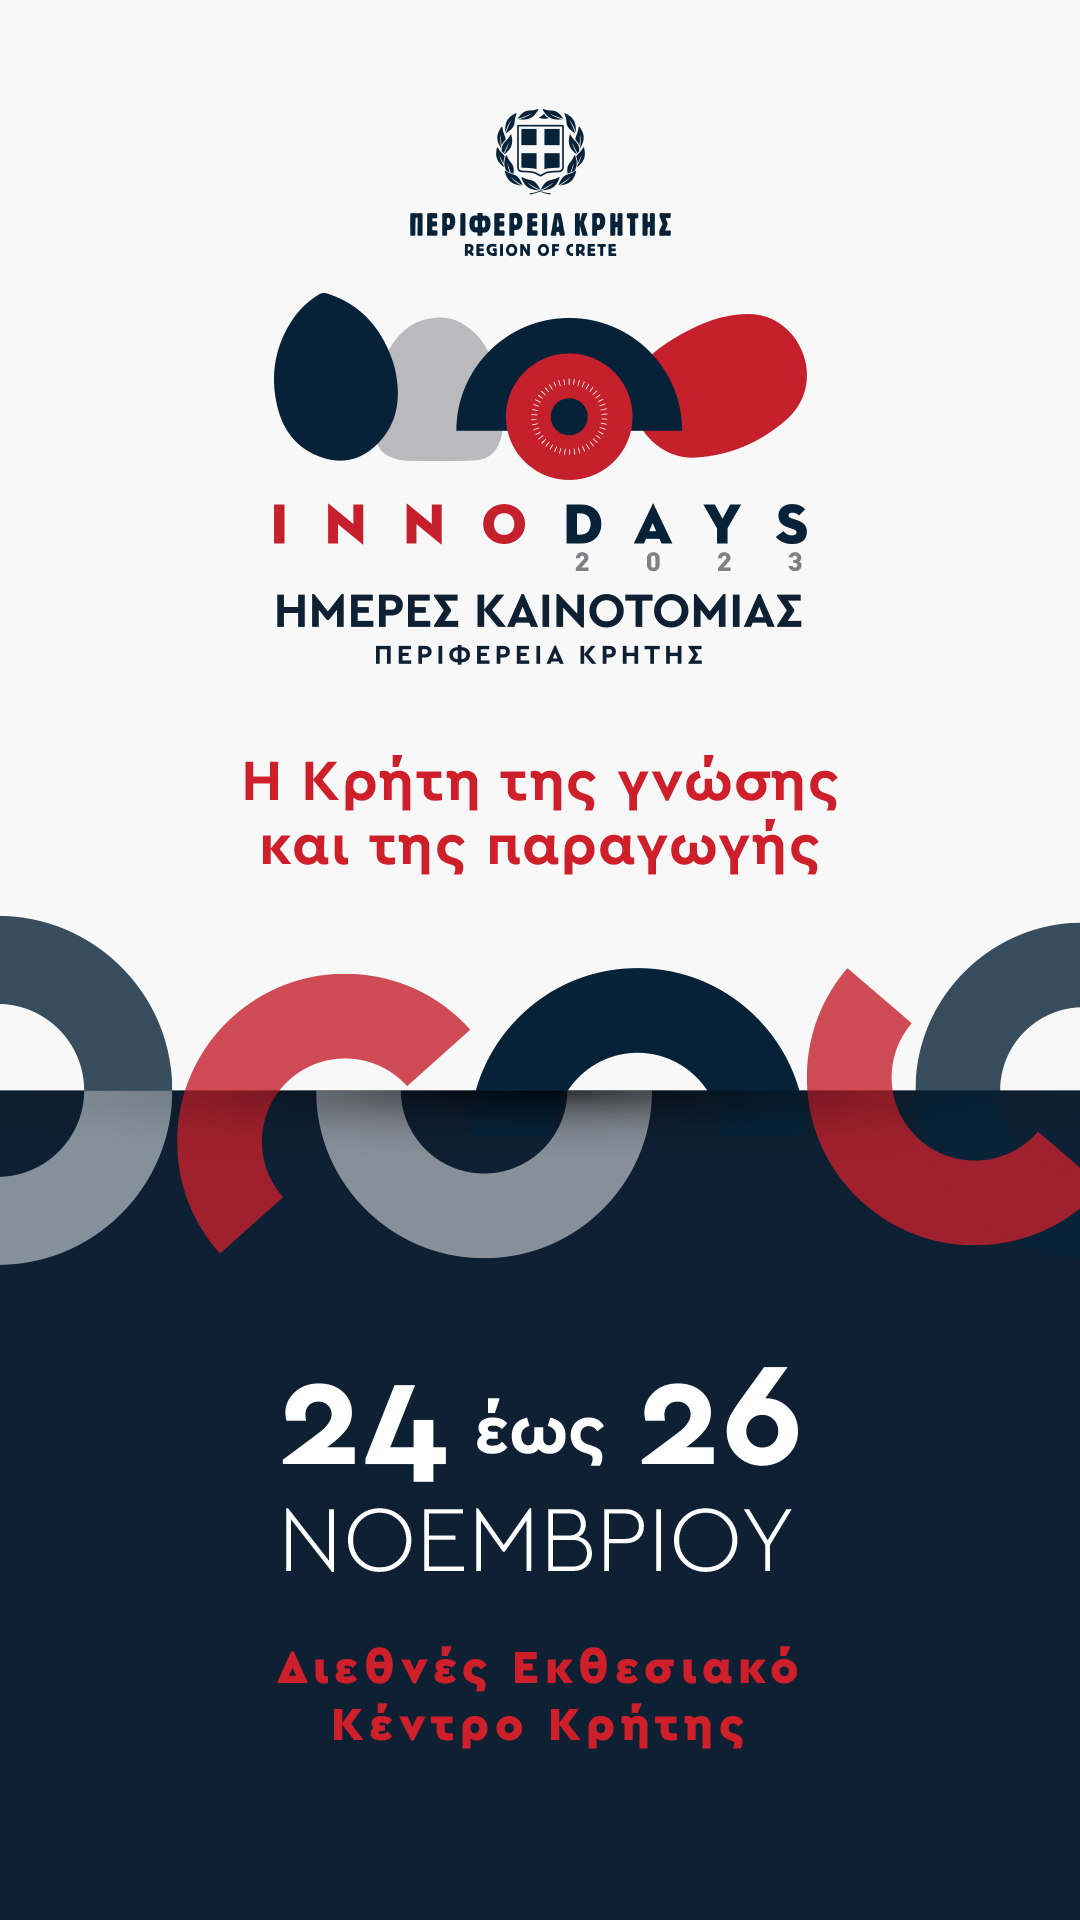 Hellenic Mediterranean University participates in “INNODAYS 2023”